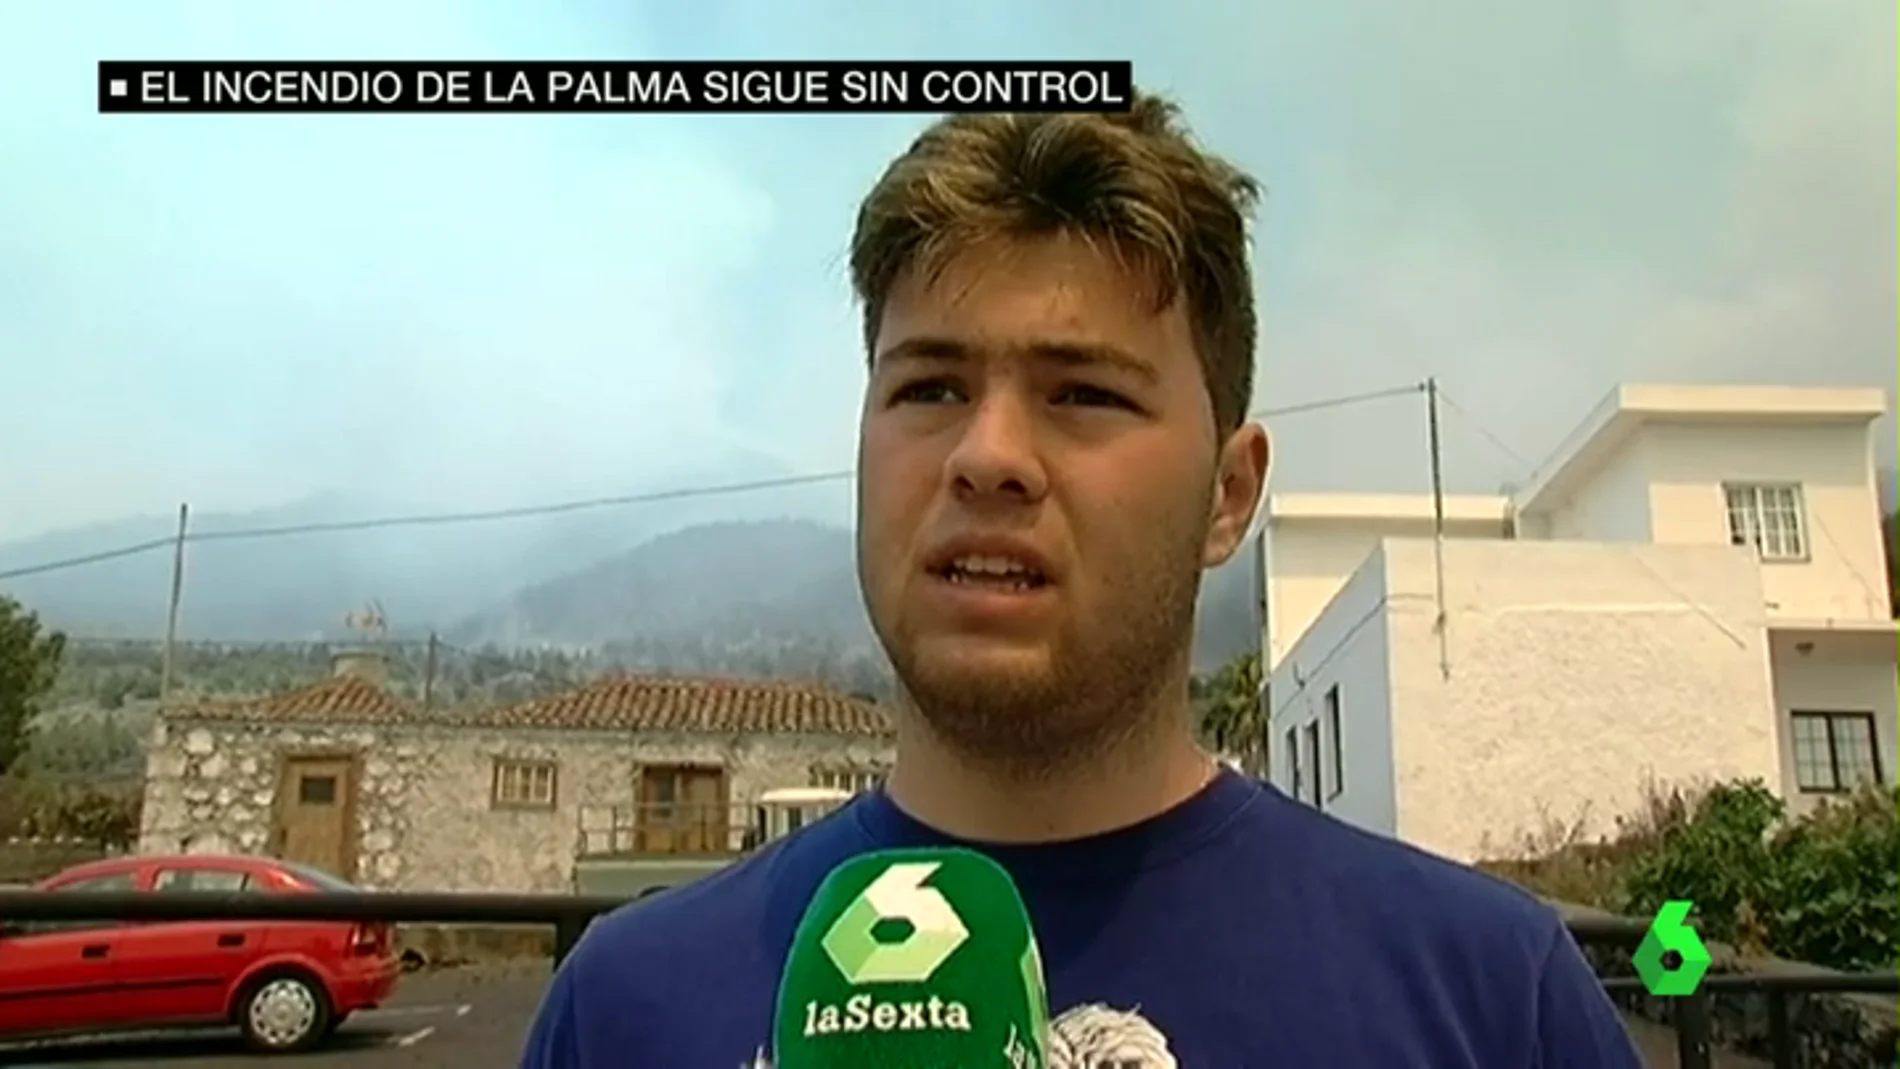 Los vecinos de La Palma viven con angustia el incendio que ya ha arrasado 2.000 hectáreas